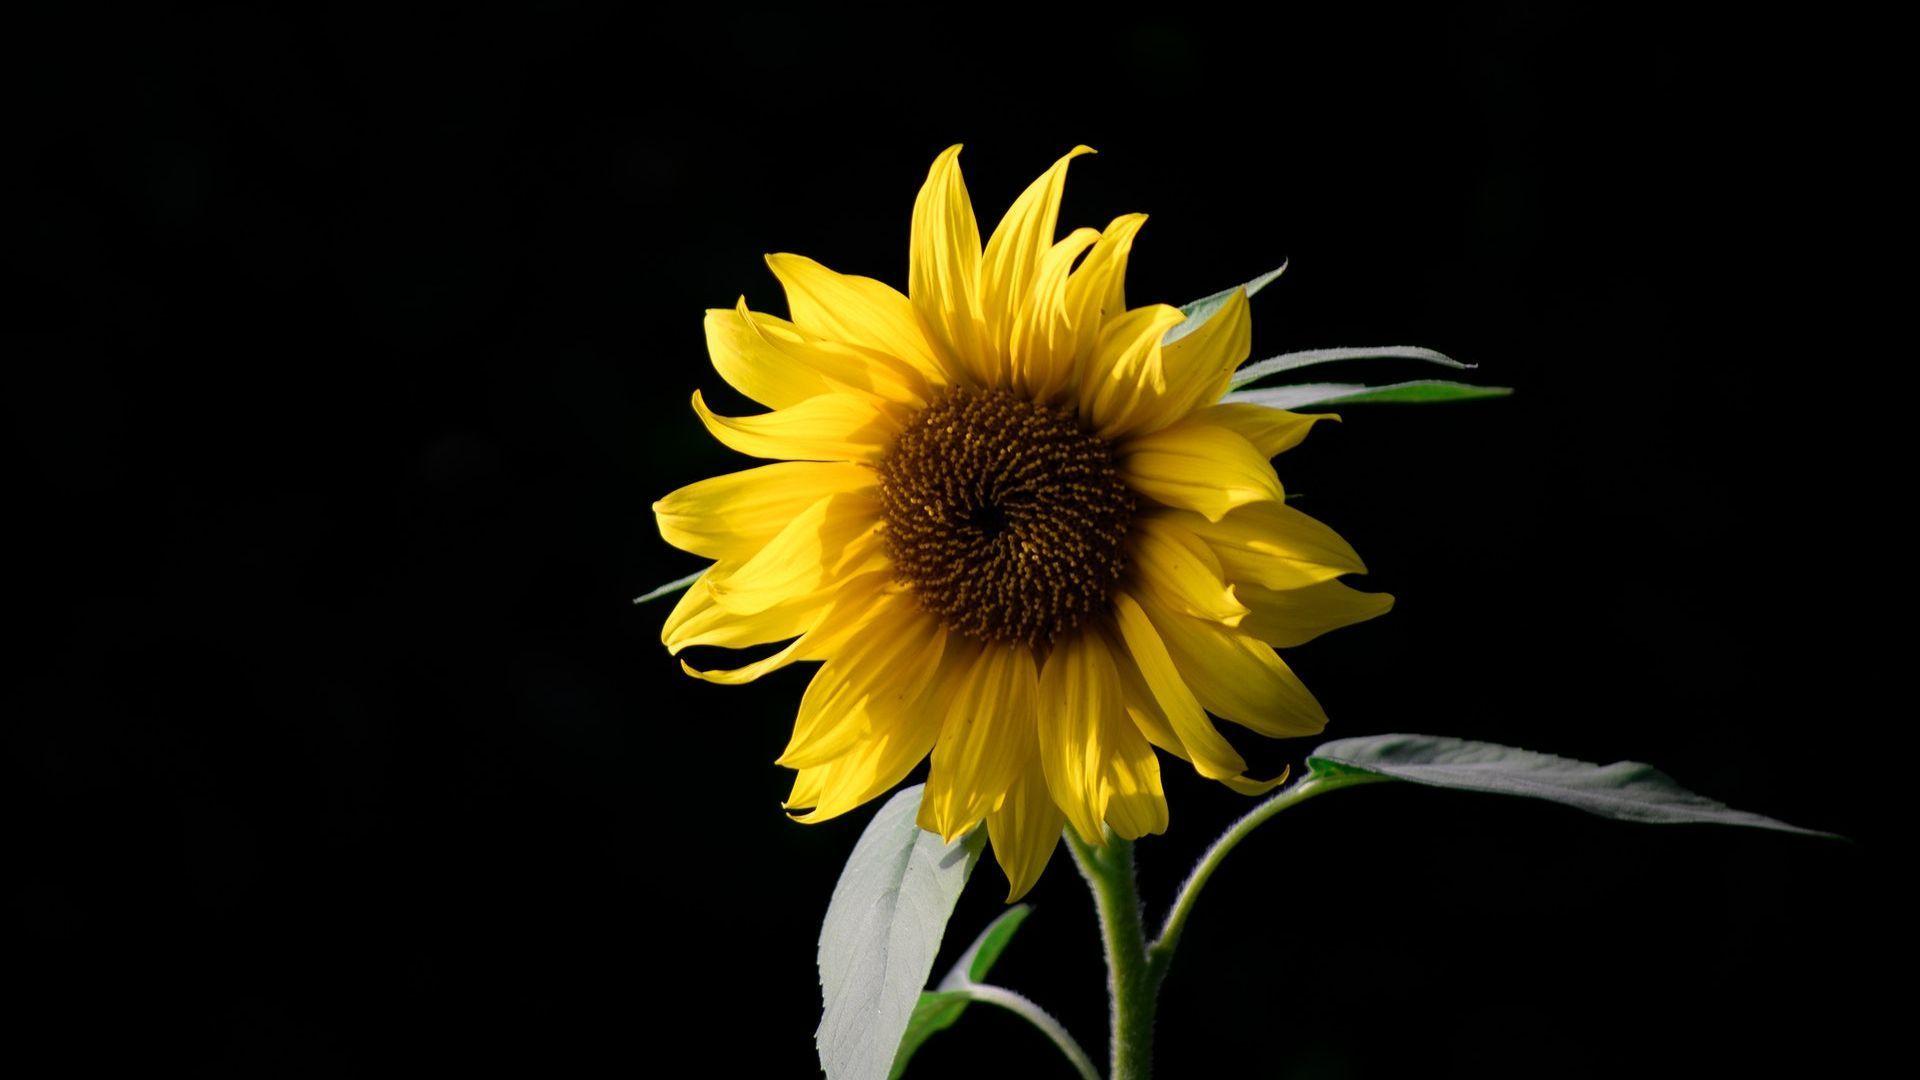 Dark Sunflower Wallpapers - Top Free Dark Sunflower Backgrounds -  WallpaperAccess